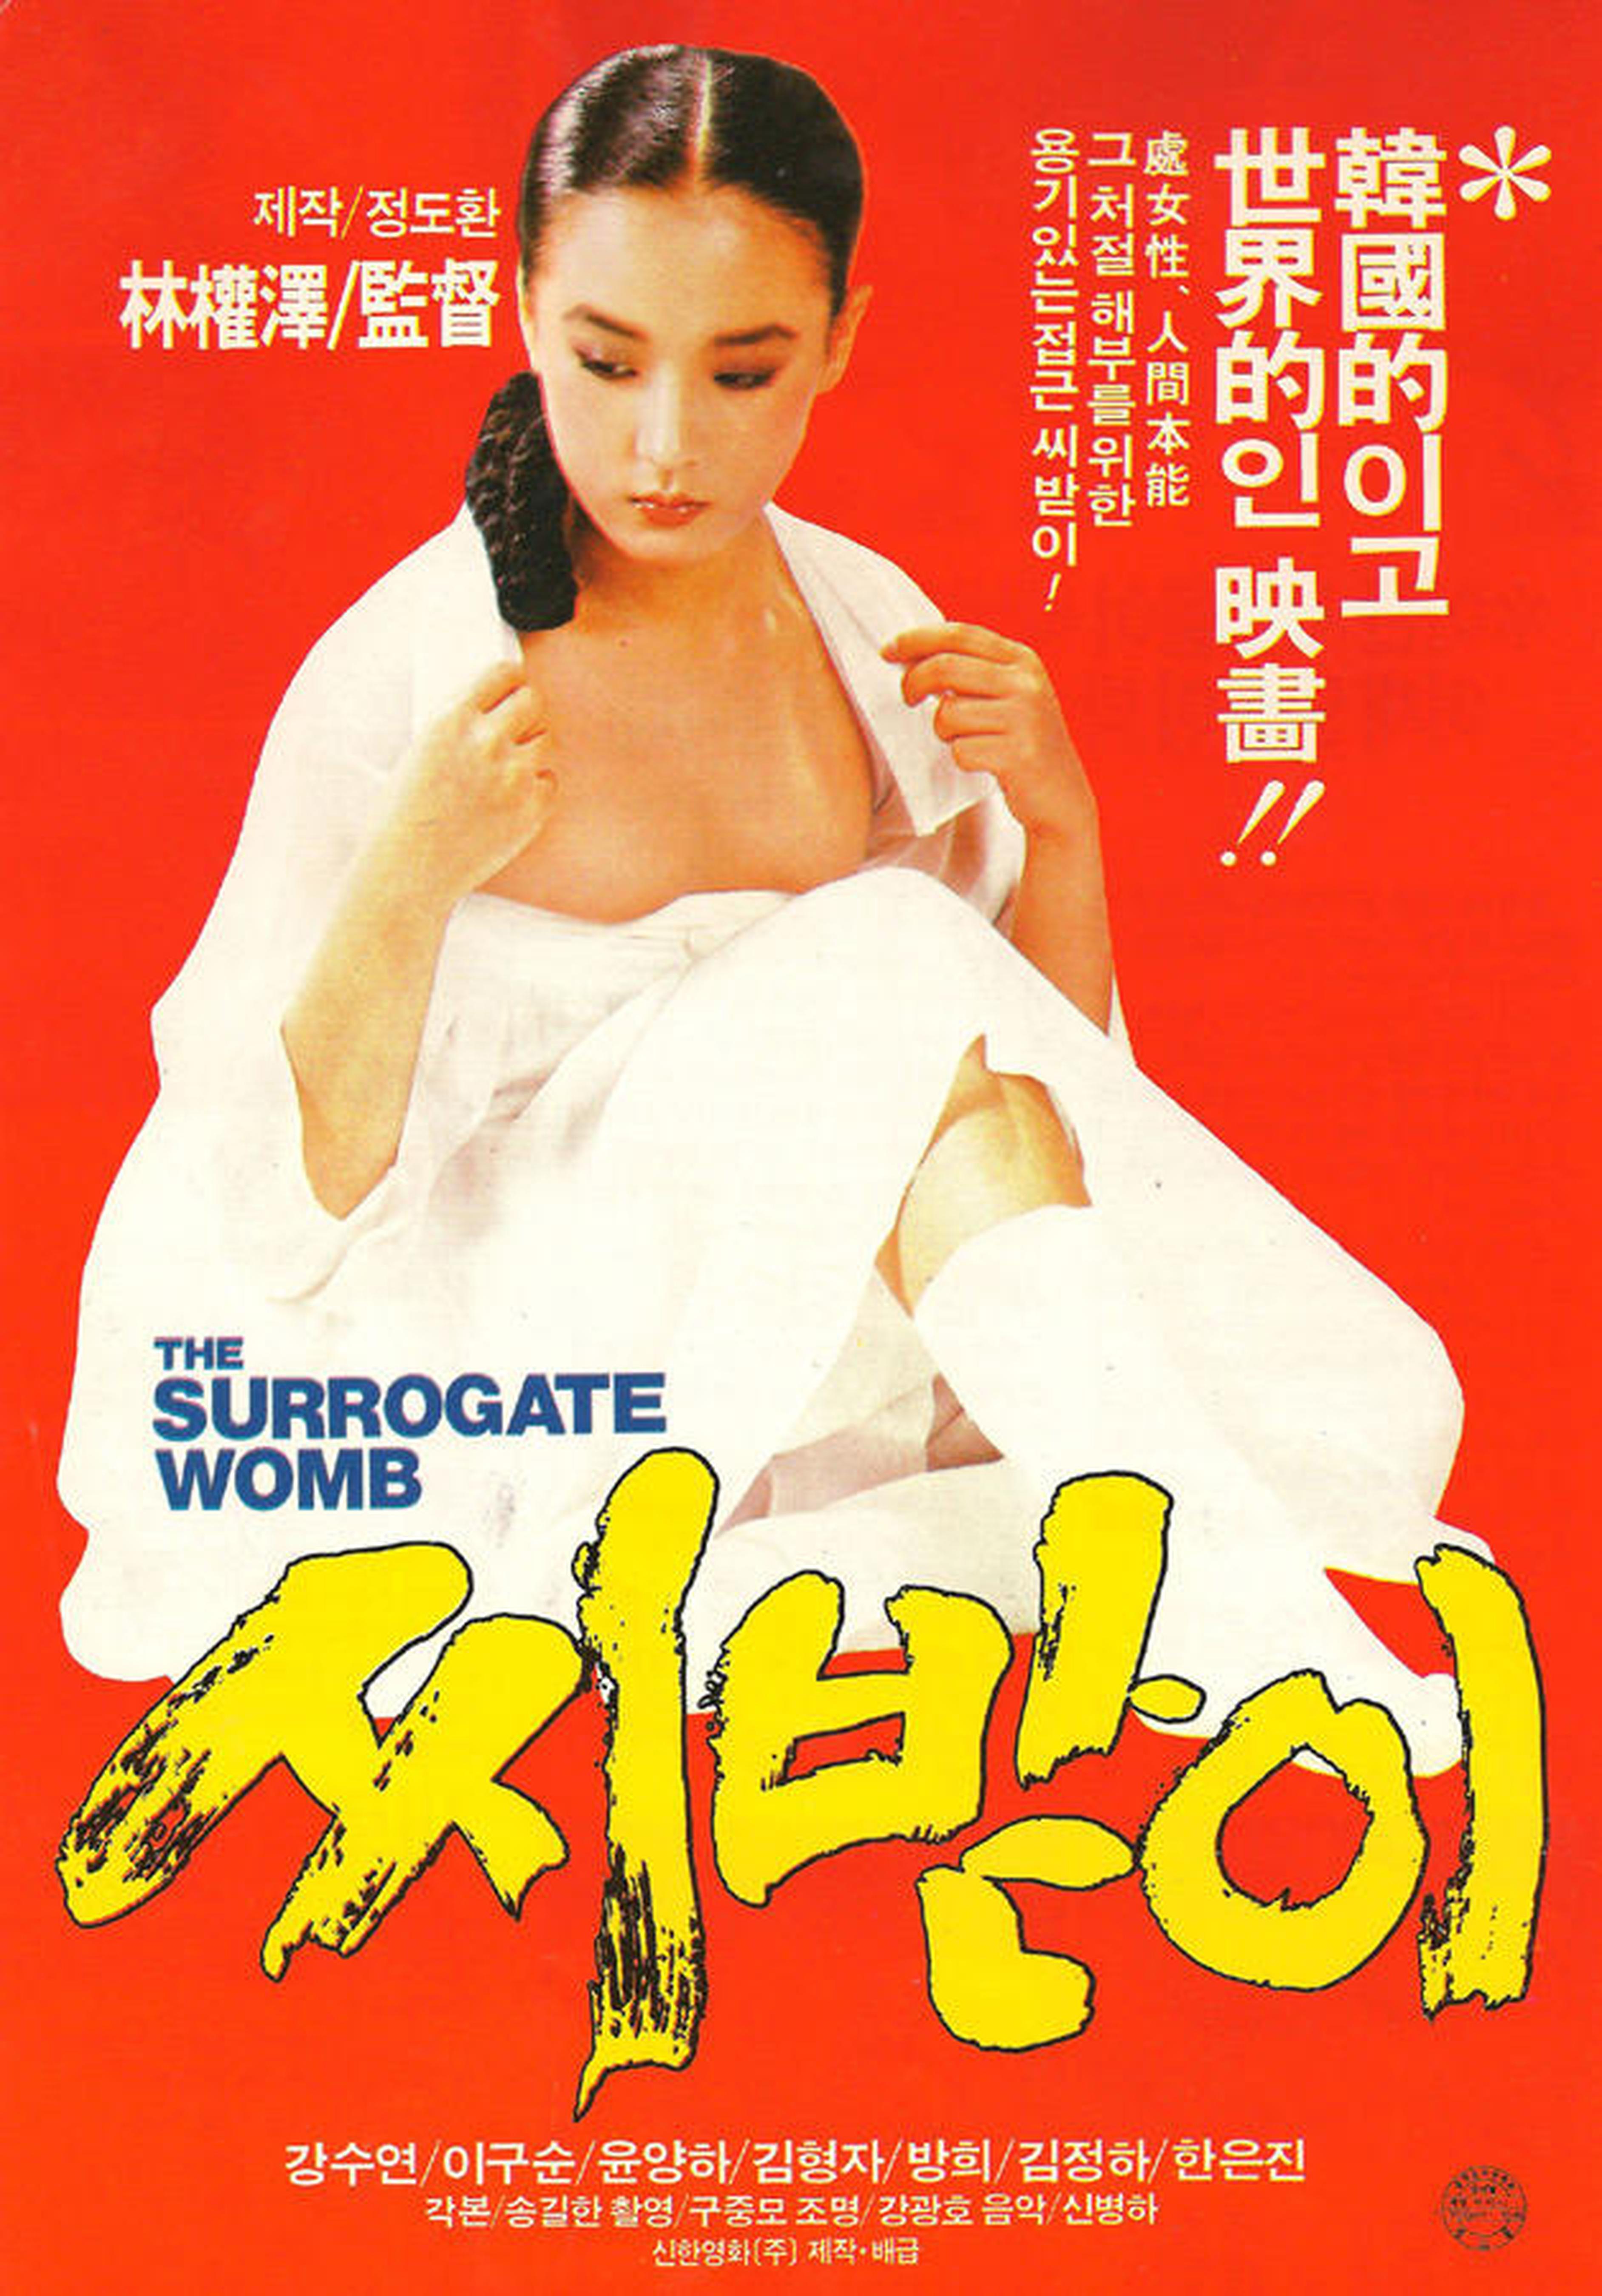 【1980-1990】《借种》(1987)导演林权泽。第44届威尼斯电影节竞赛片，姜受延捧获最佳女演员奖，也是韩国首个欧洲三大电影节影后殊荣。